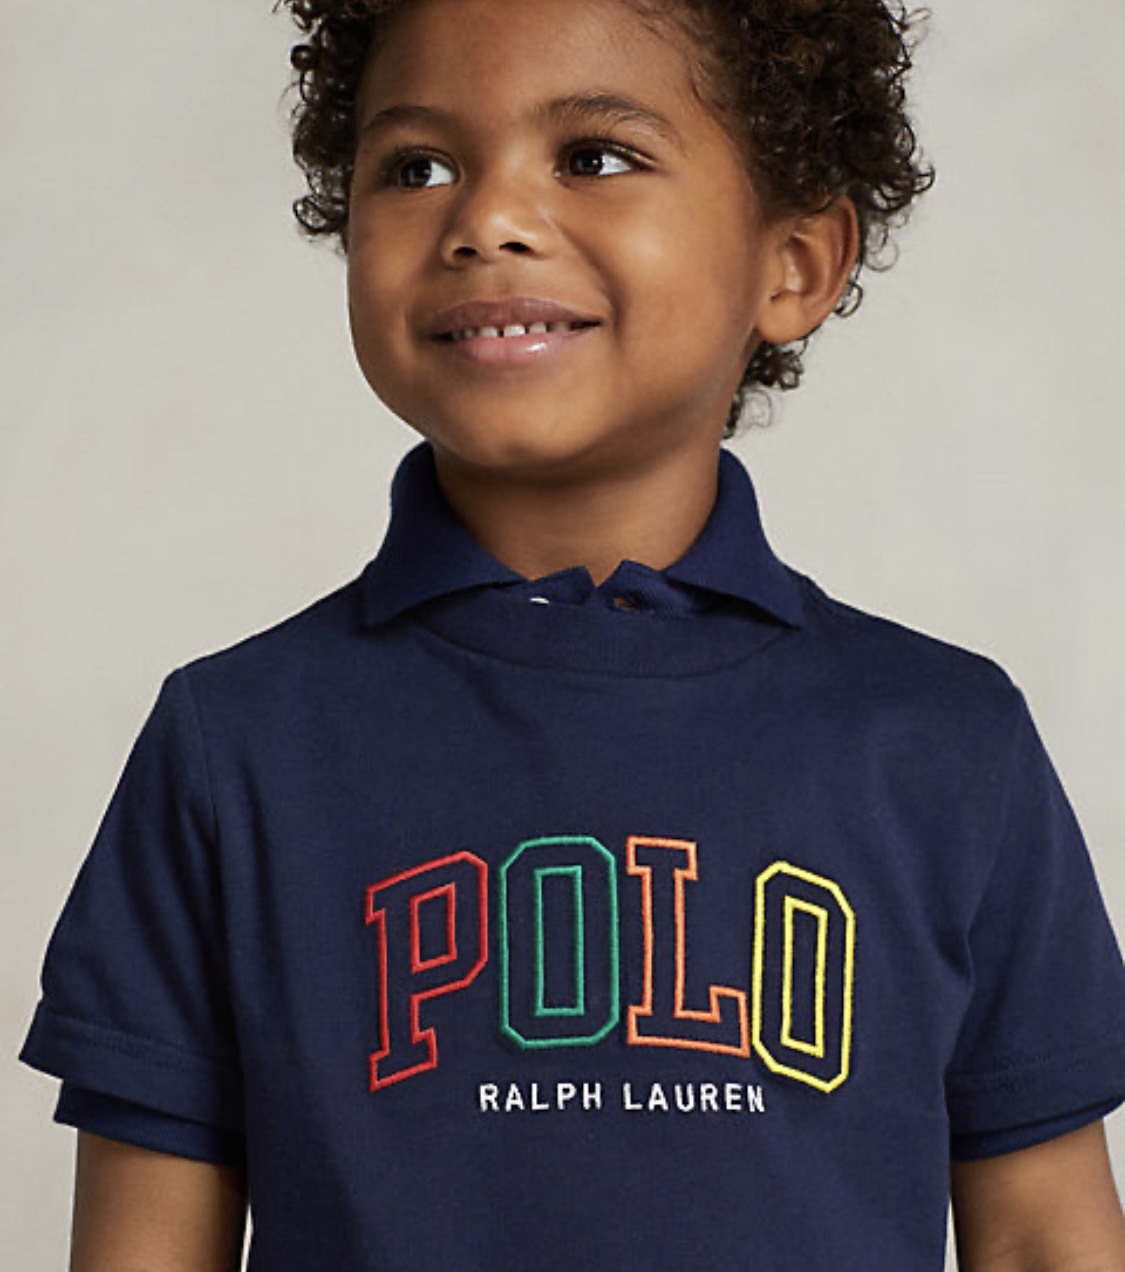 Camisa Polo Tommy Hilfiger - Tam 3 a 6 meses ( formato pequeno ) -  Importados Gabriel - Peças Importadas para bebê, adulto, crianças .